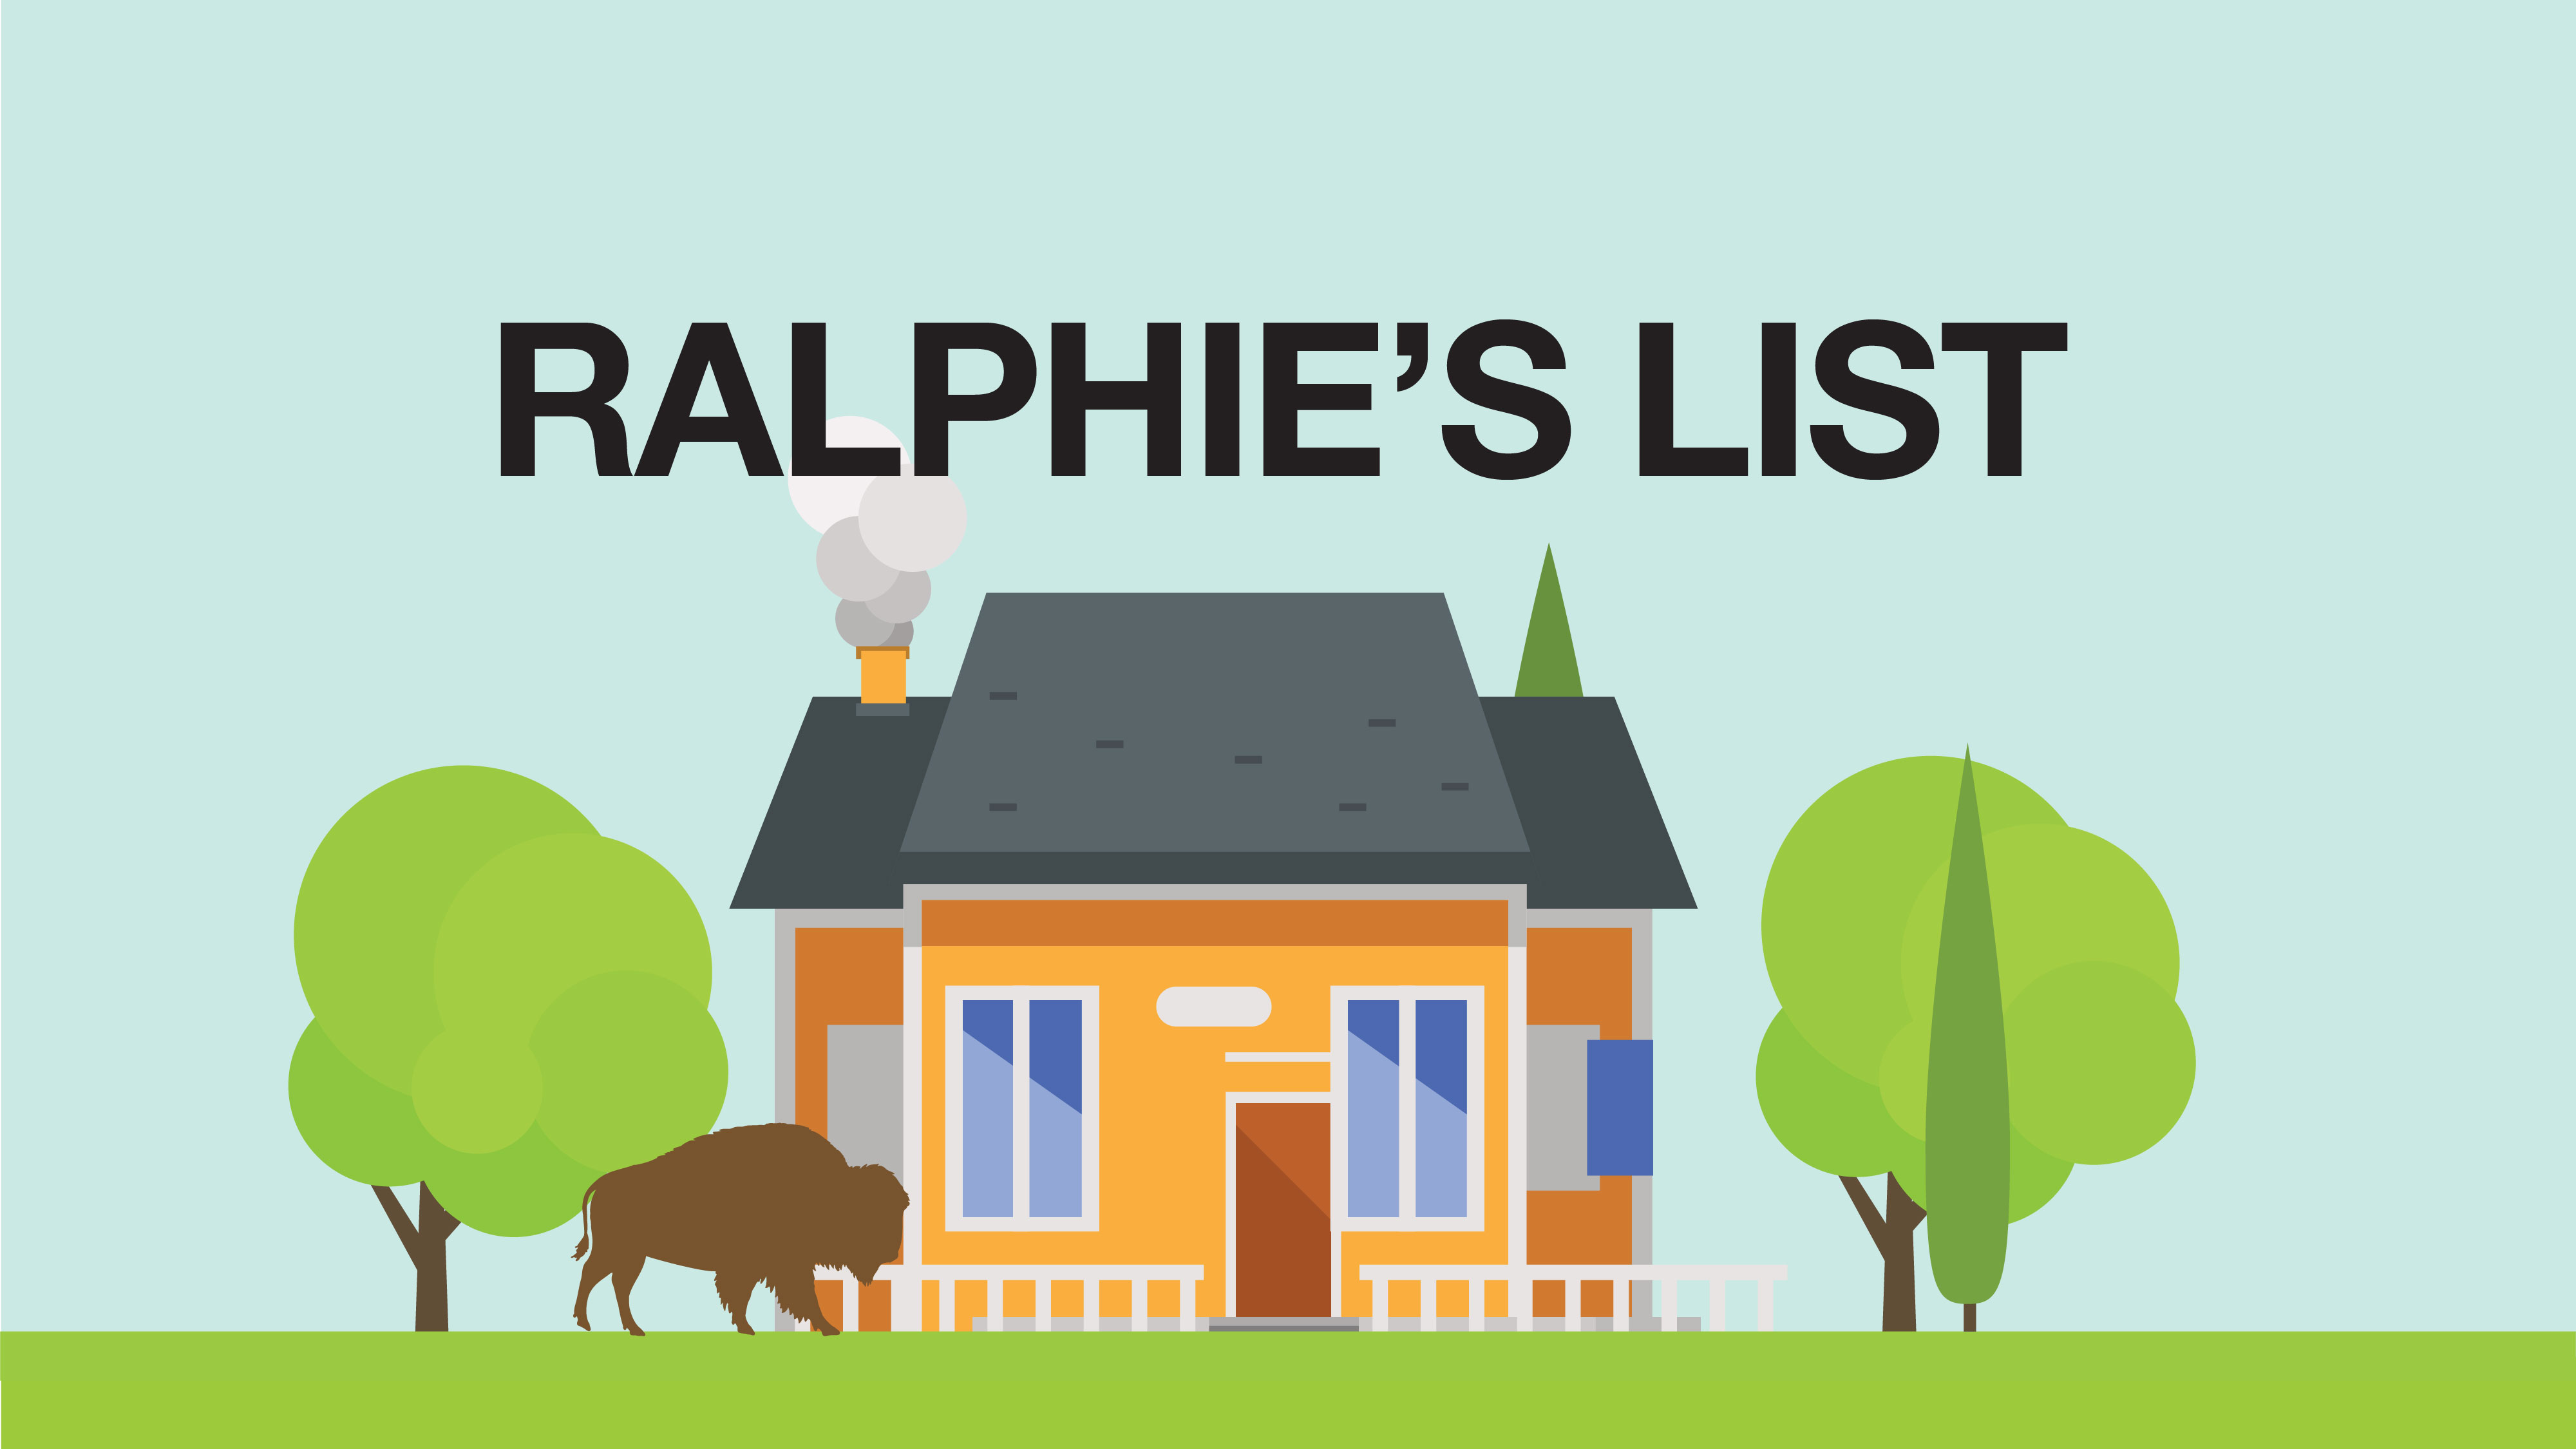 Ralphie's List